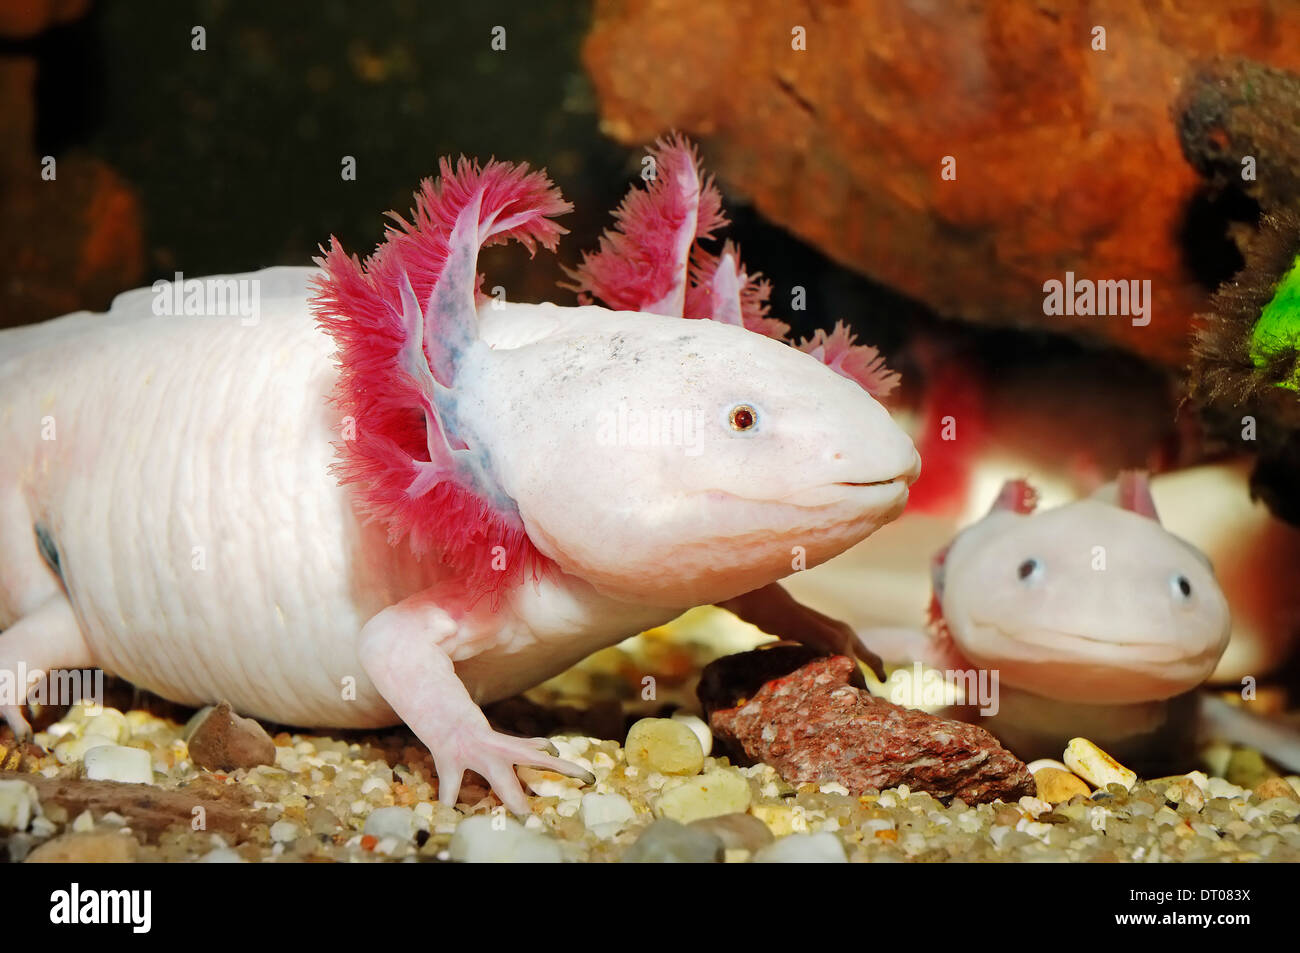 Salamandre mexicain ou mexicain de l'axolotl (Ambystoma mexicanum) Banque D'Images